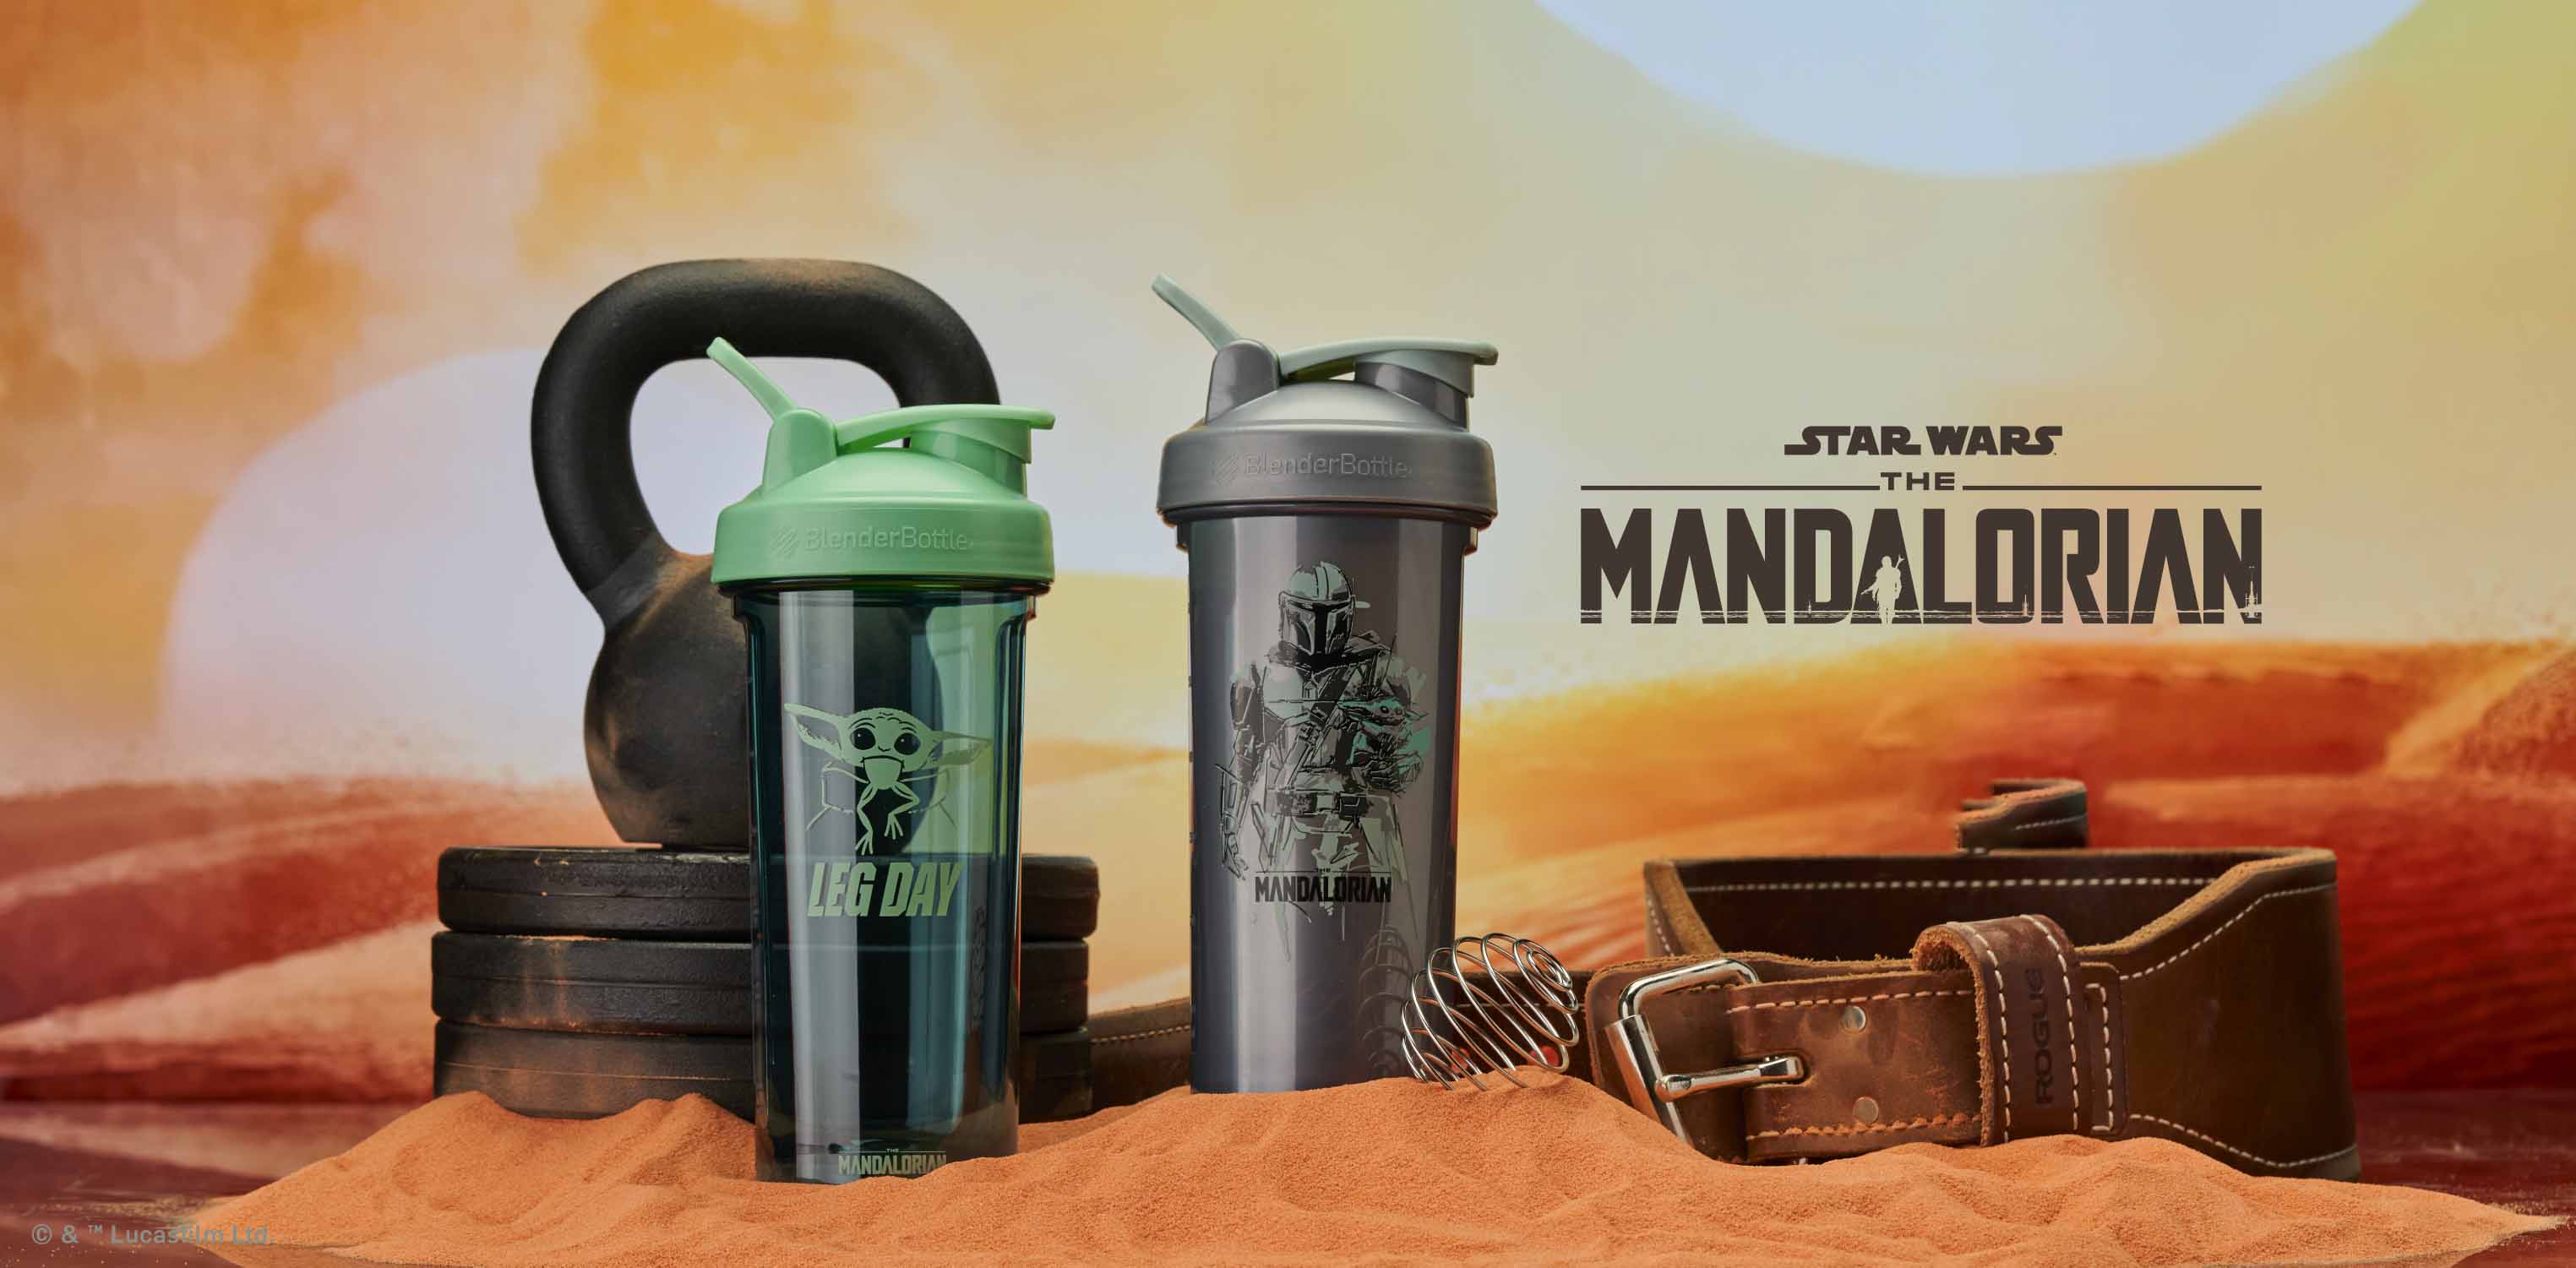 the mandalorian blender bottle｜TikTok Search